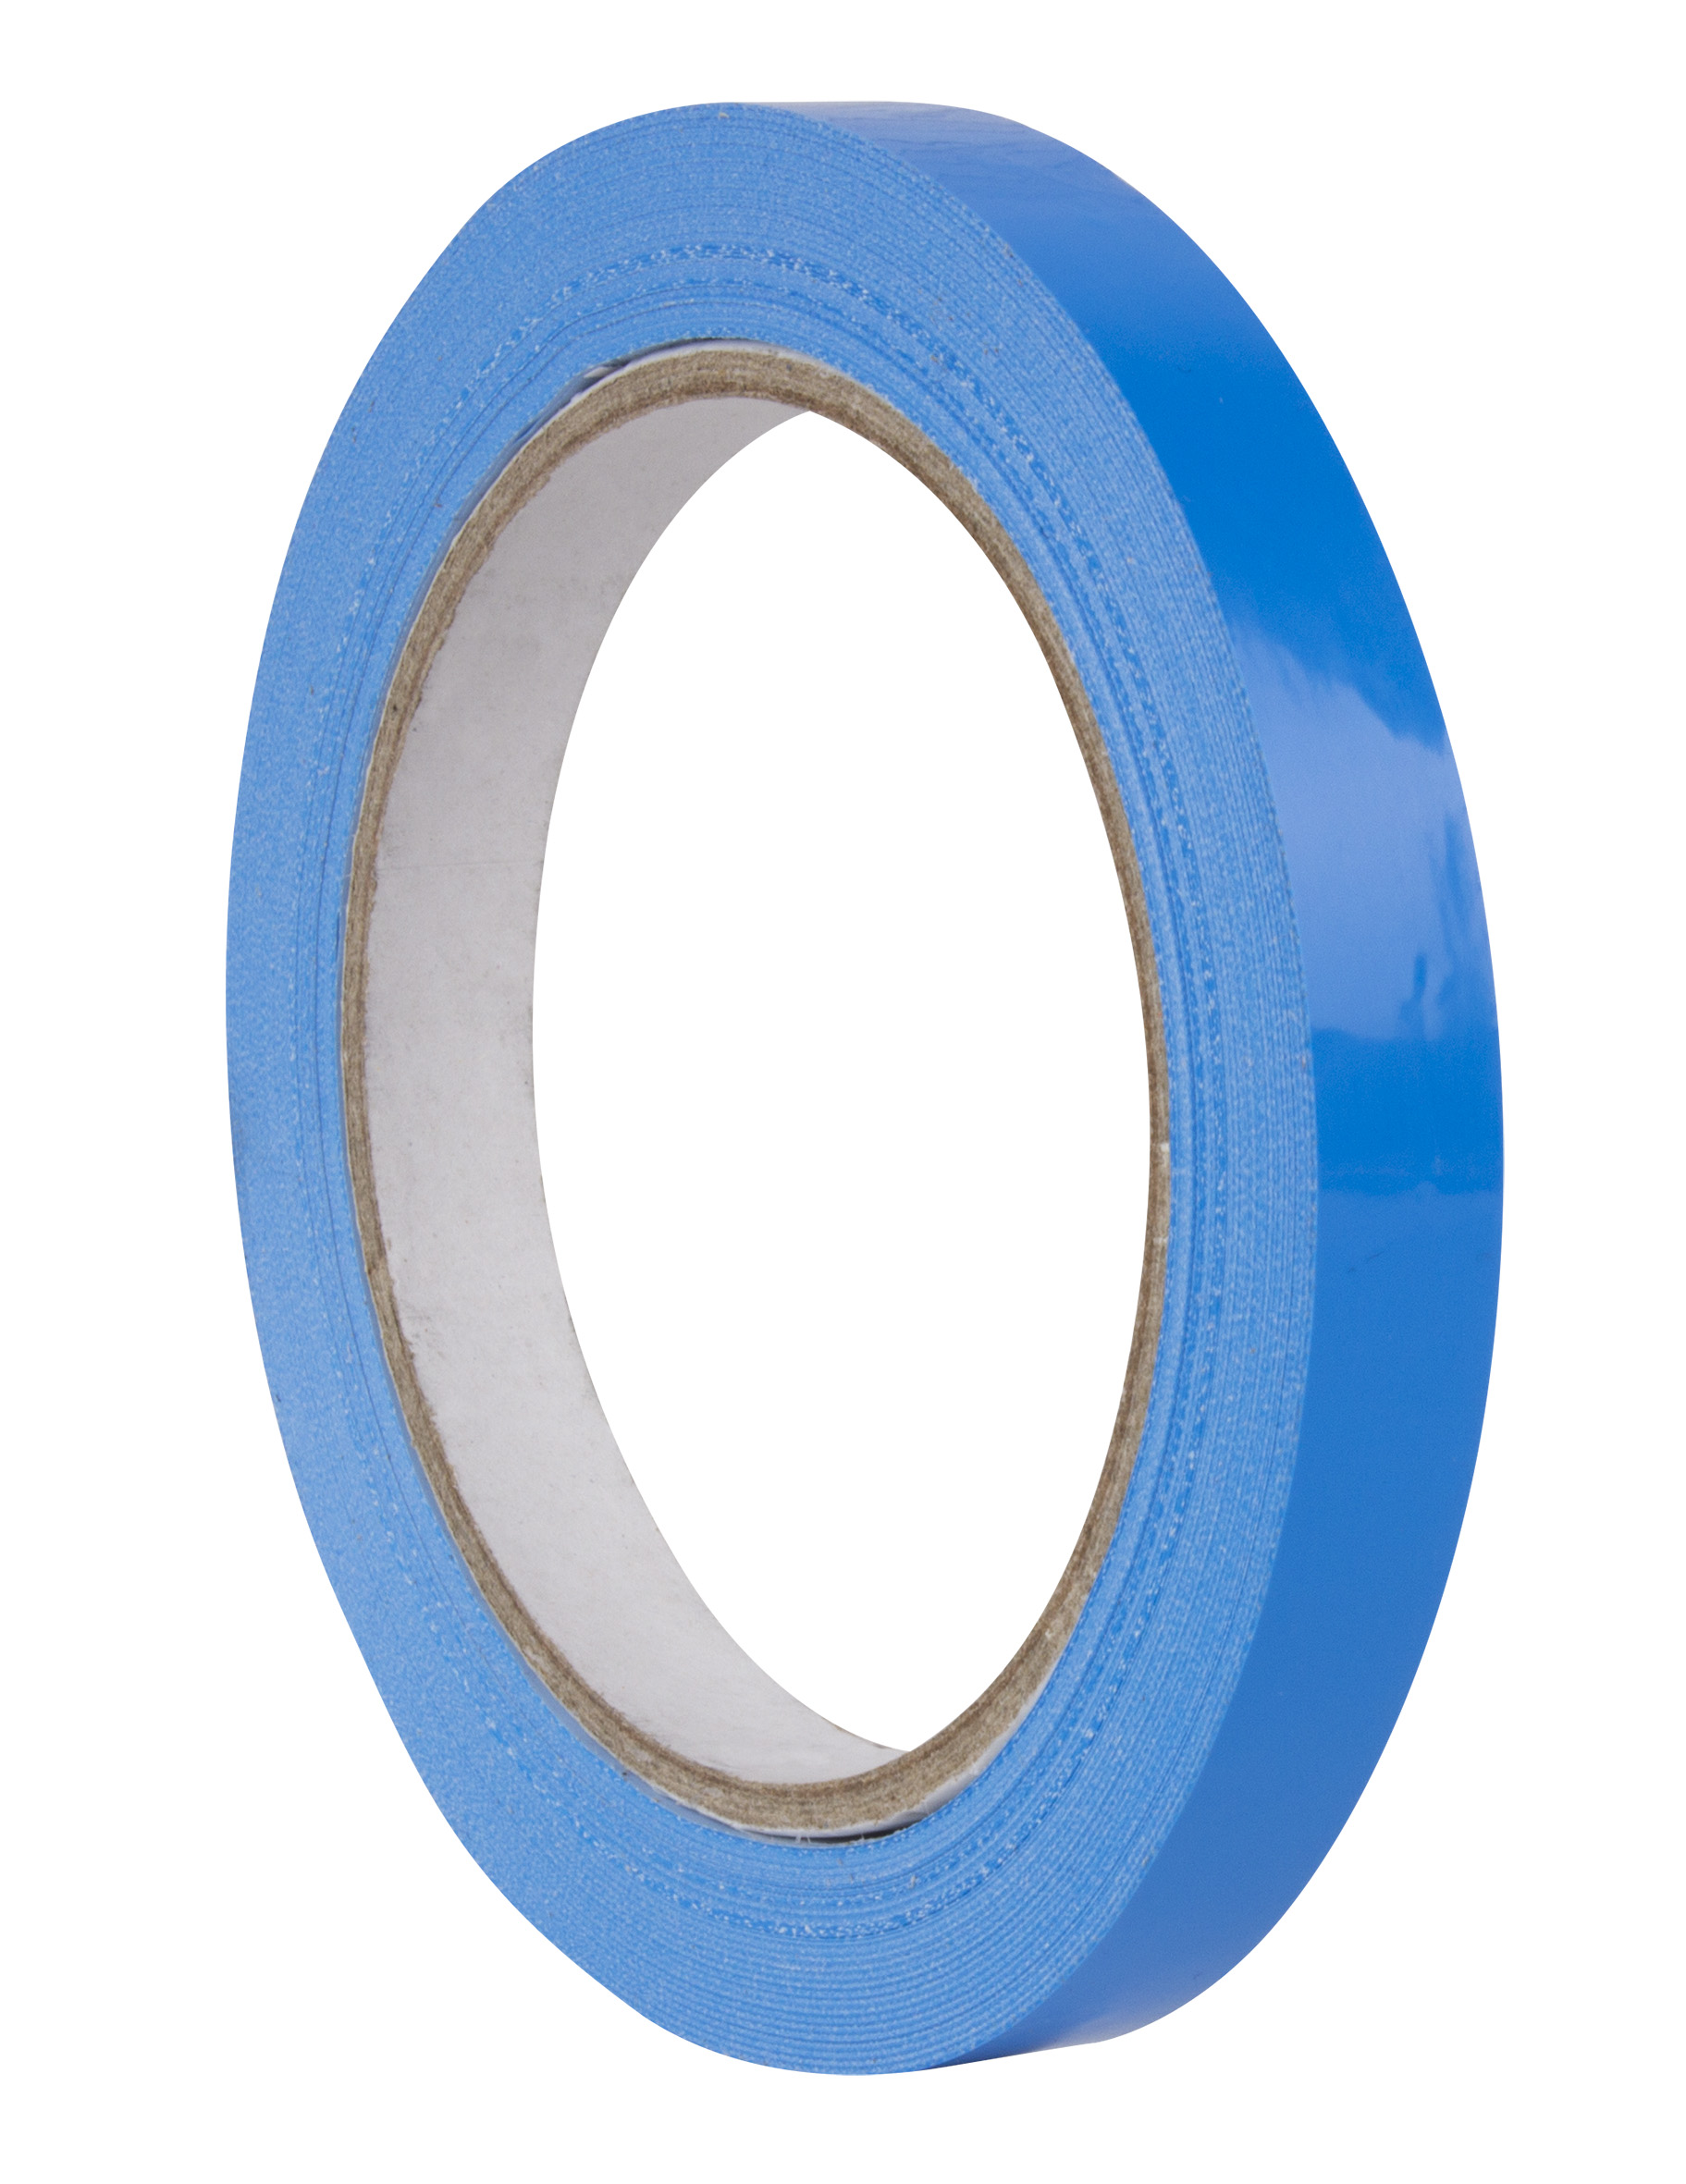 Apli Blue Ruban Adhésif 12mm x 66m - Imperméable et Résistant aux Intempéries - Facile à Couper à la Main - Idéal pour l'Artisanat et l'Emballage Bleu